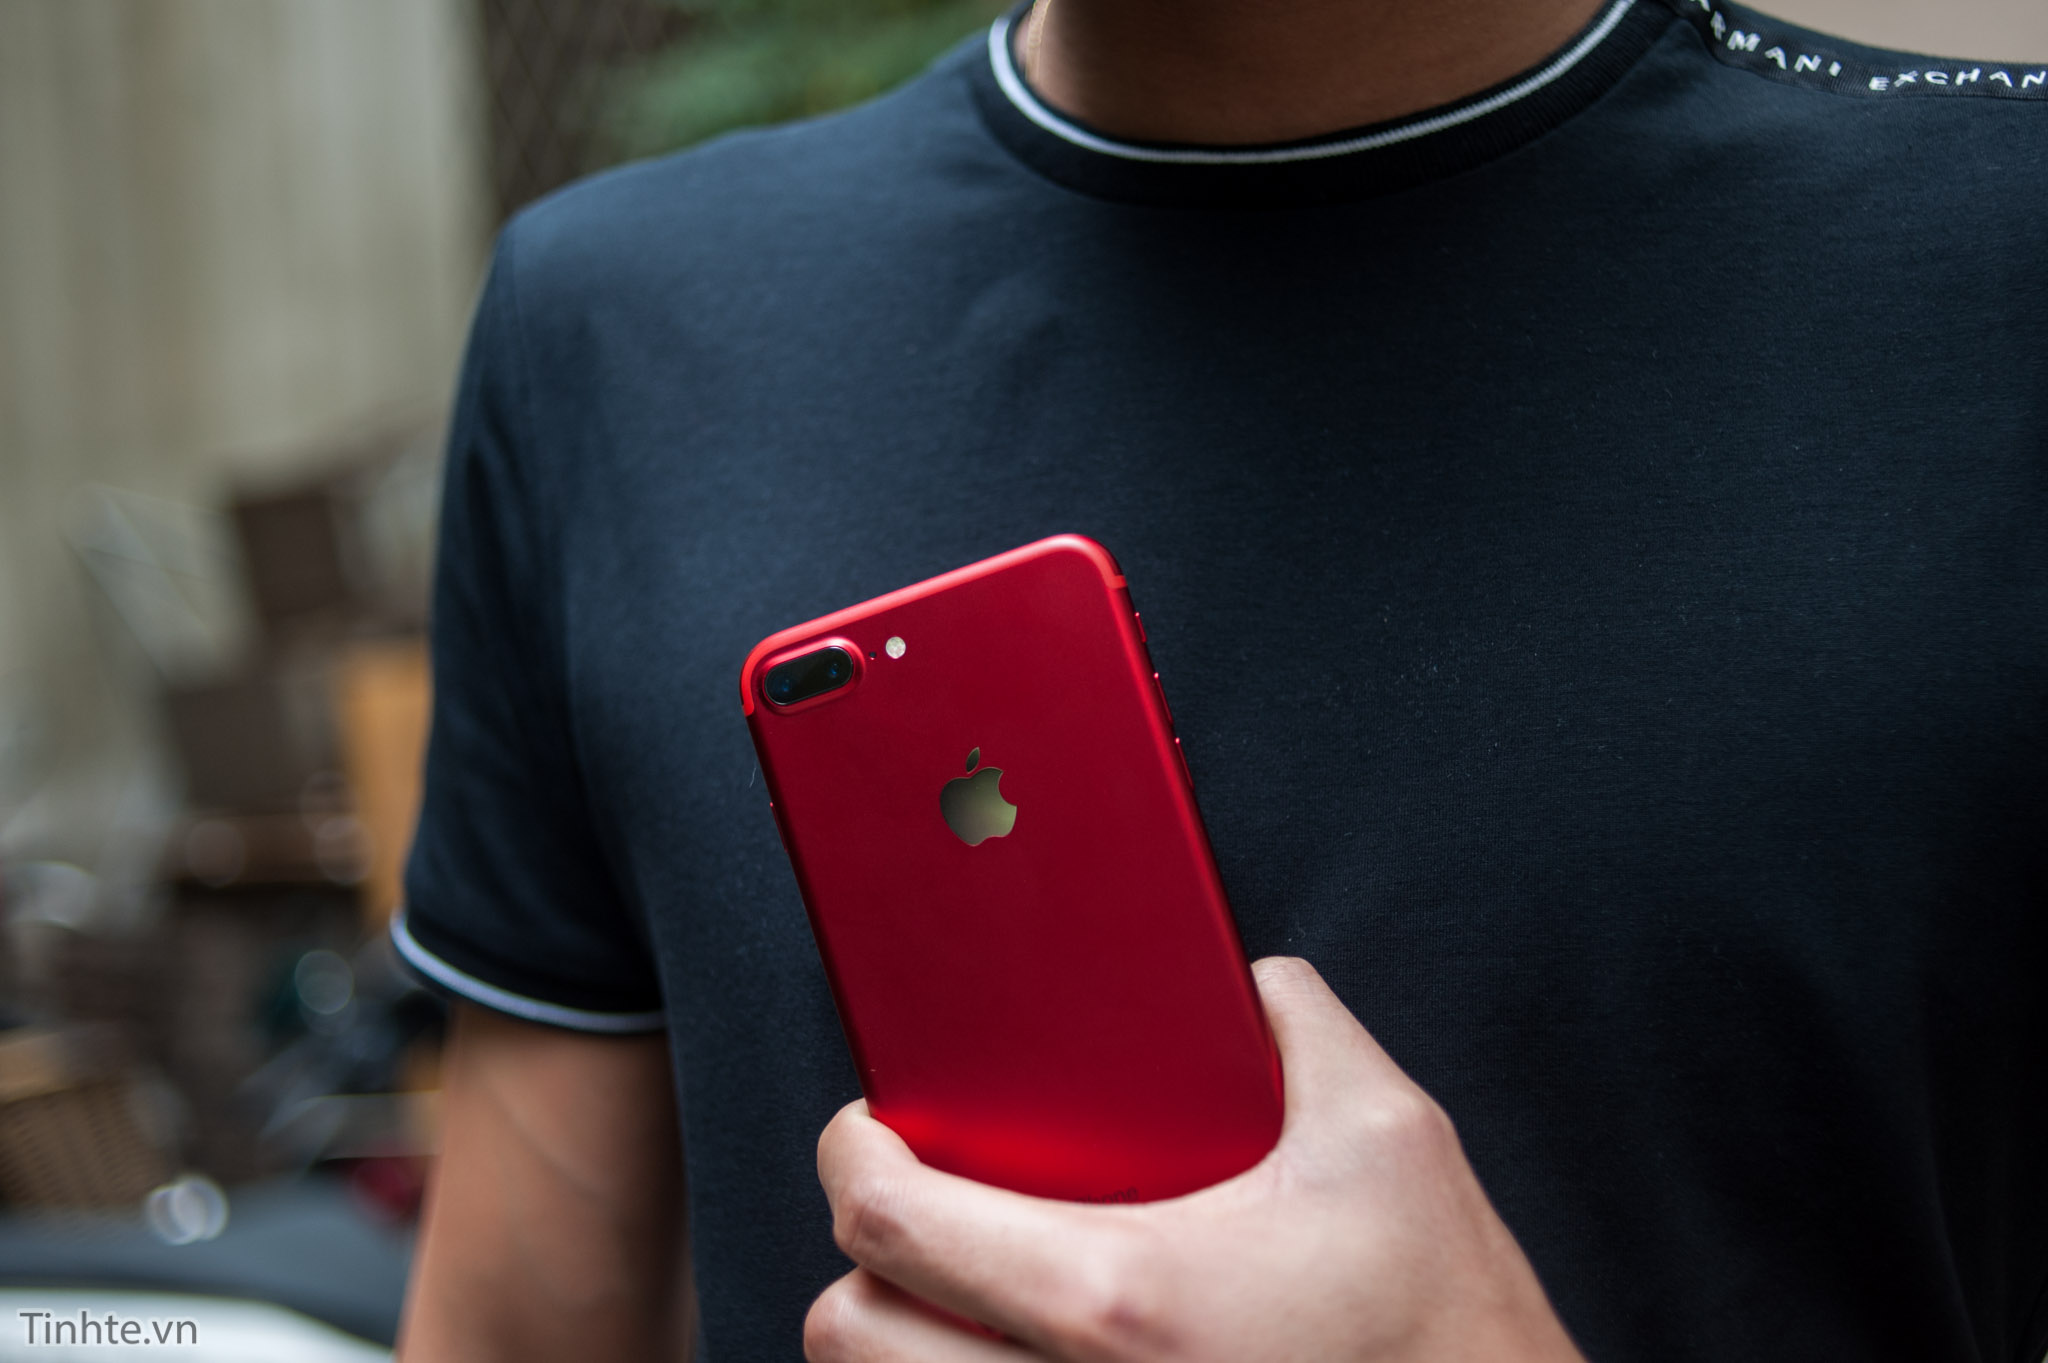 Trên tay iPhone 7 Plus RED: đỏ nhung đẹp và lạ, nhám như matte black